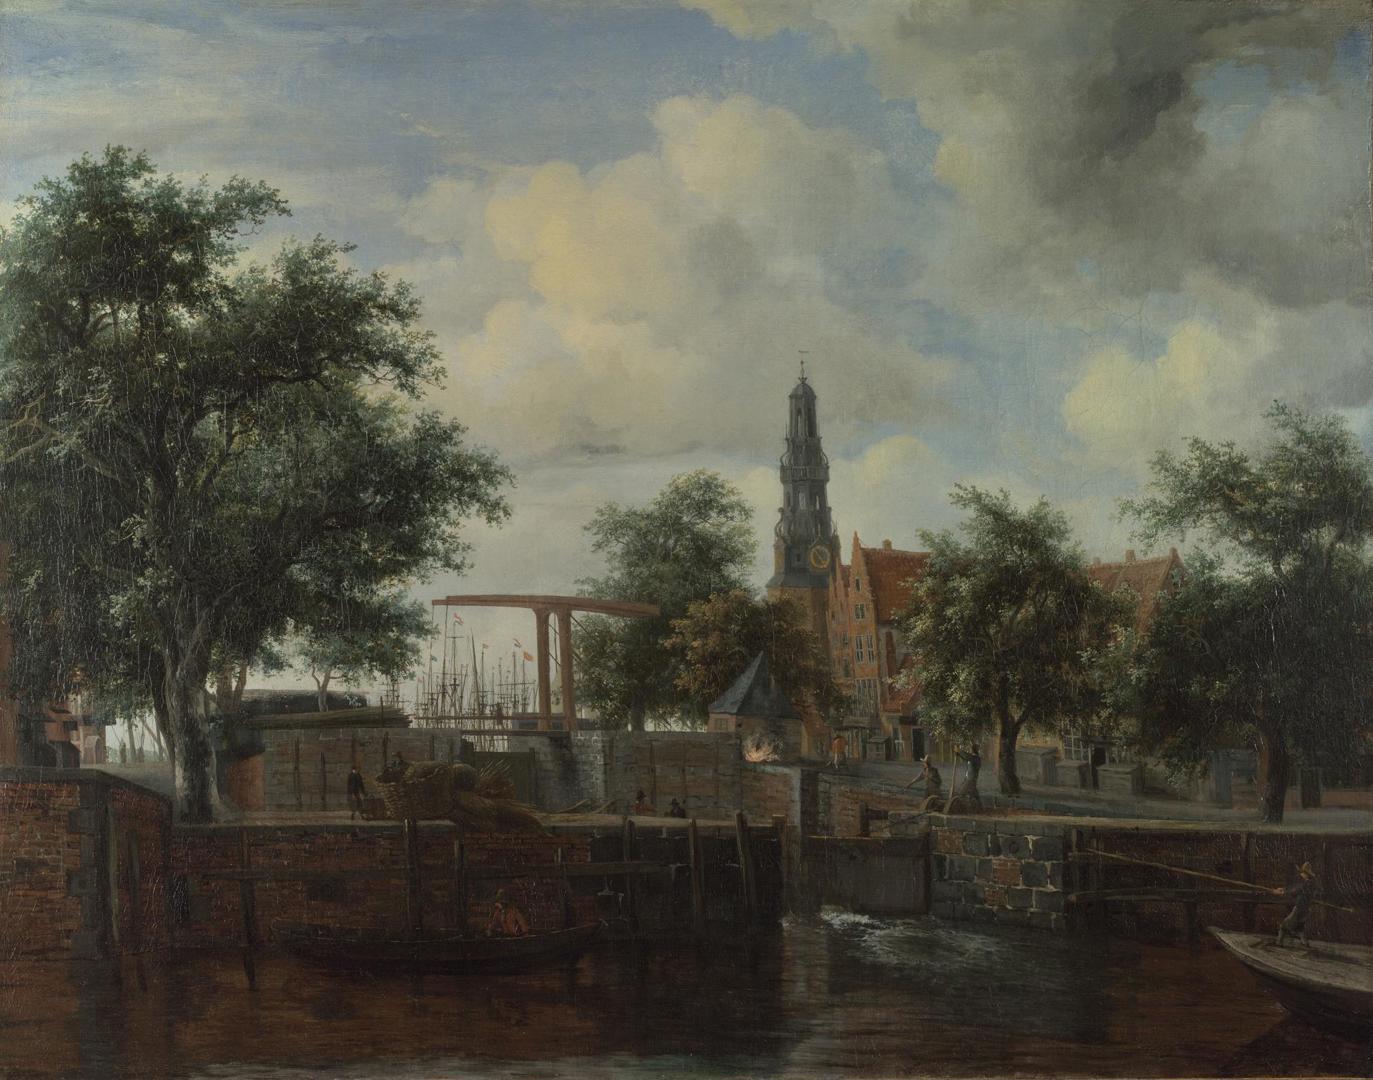 The Haarlem Lock, Amsterdam by Meindert Hobbema